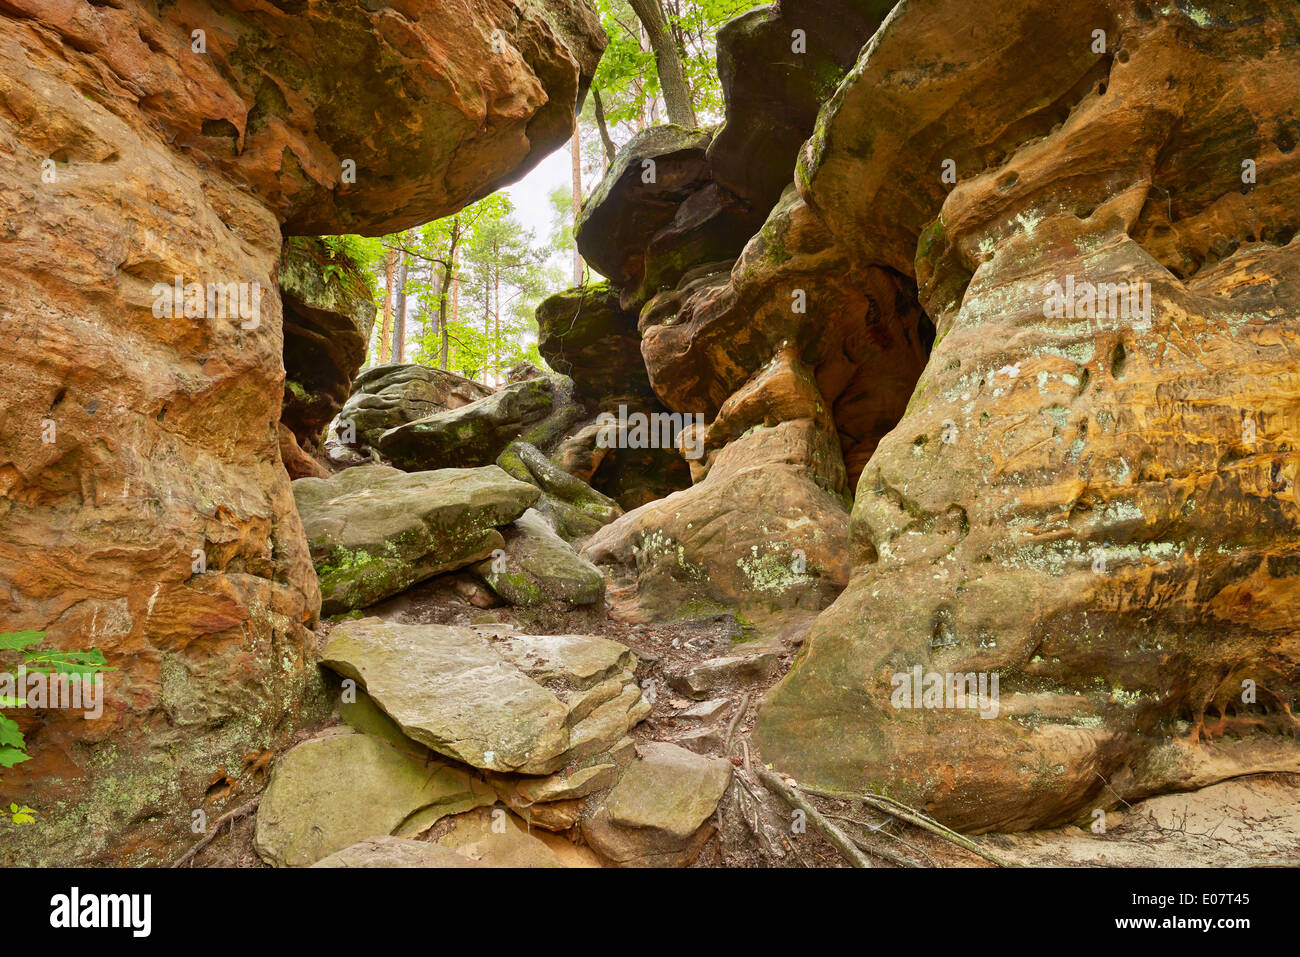 La beauté de la Terre. L'enfer des rochers près de Nieklan, Pologne. Caractéristiques géologiques étonnantes réserver. Banque D'Images